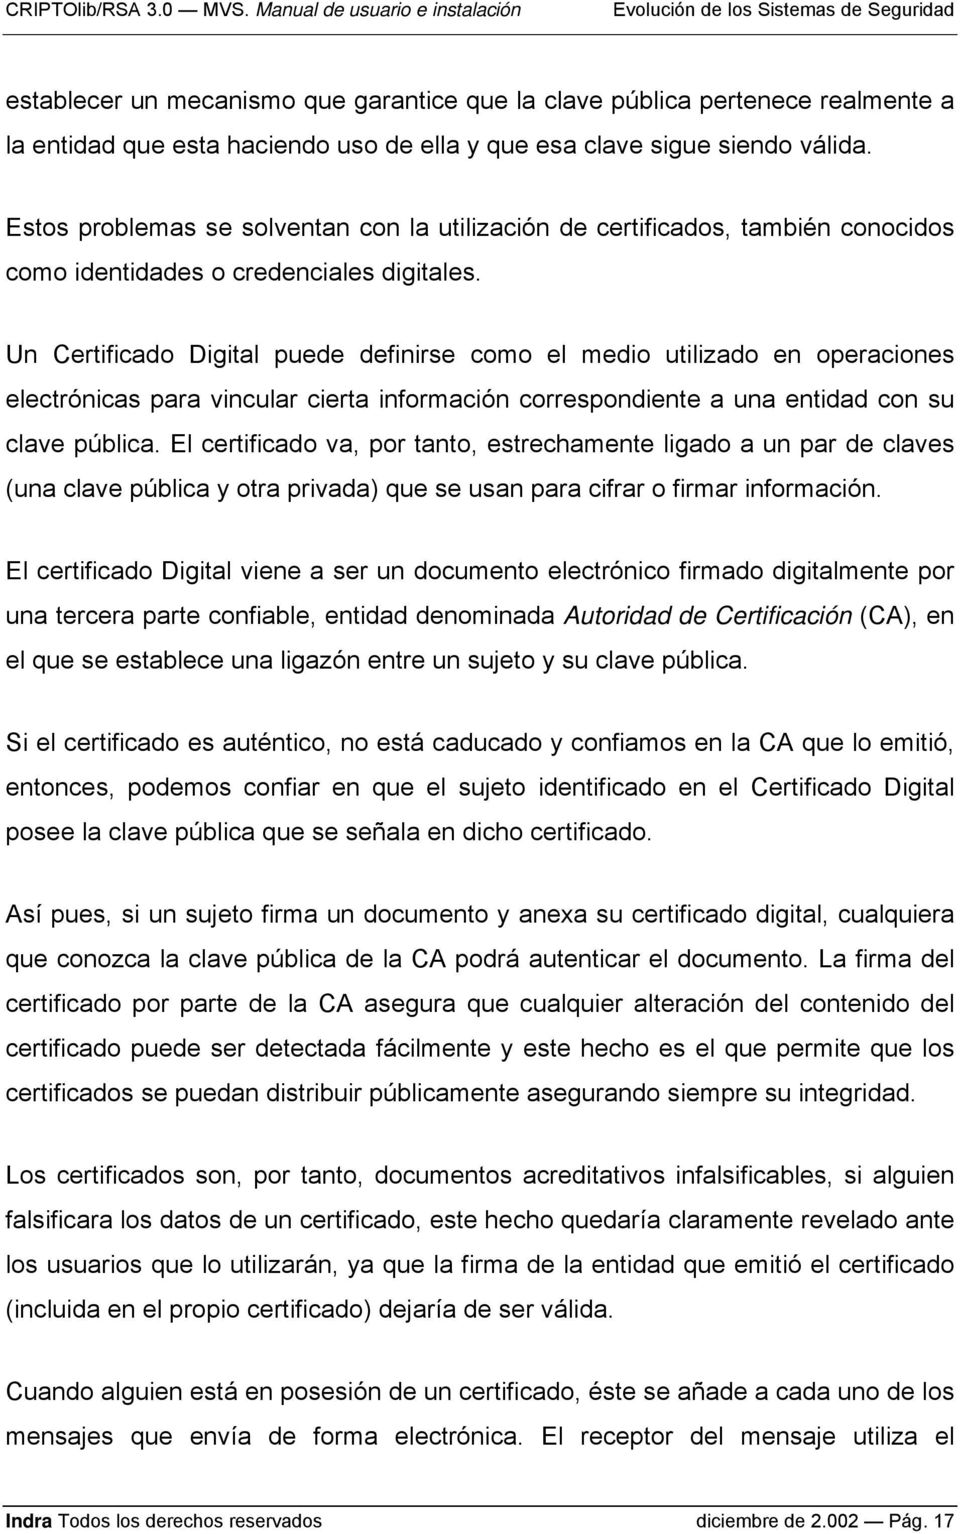 Un Certificado Digital puede definirse como el medio utilizado en operaciones electrónicas para vincular cierta información correspondiente a una entidad con su clave pública.